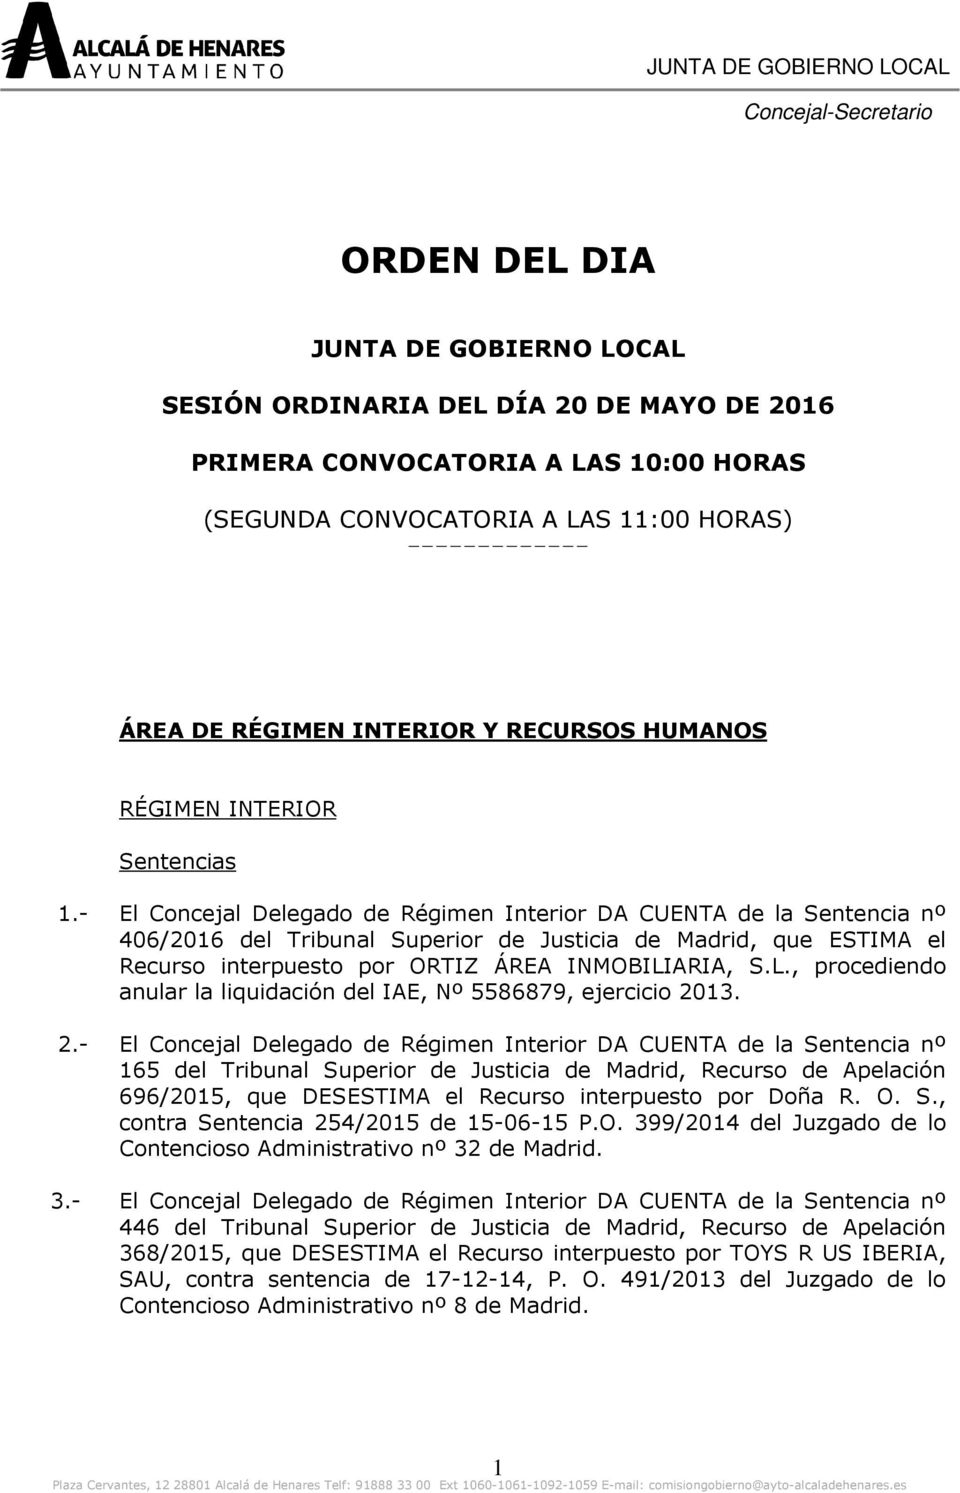 - El Concejal Delegado de Régimen Interior DA CUENTA de la Sentencia nº 406/2016 del Tribunal Superior de Justicia de Madrid, que ESTIMA el Recurso interpuesto por ORTIZ ÁREA INMOBILI